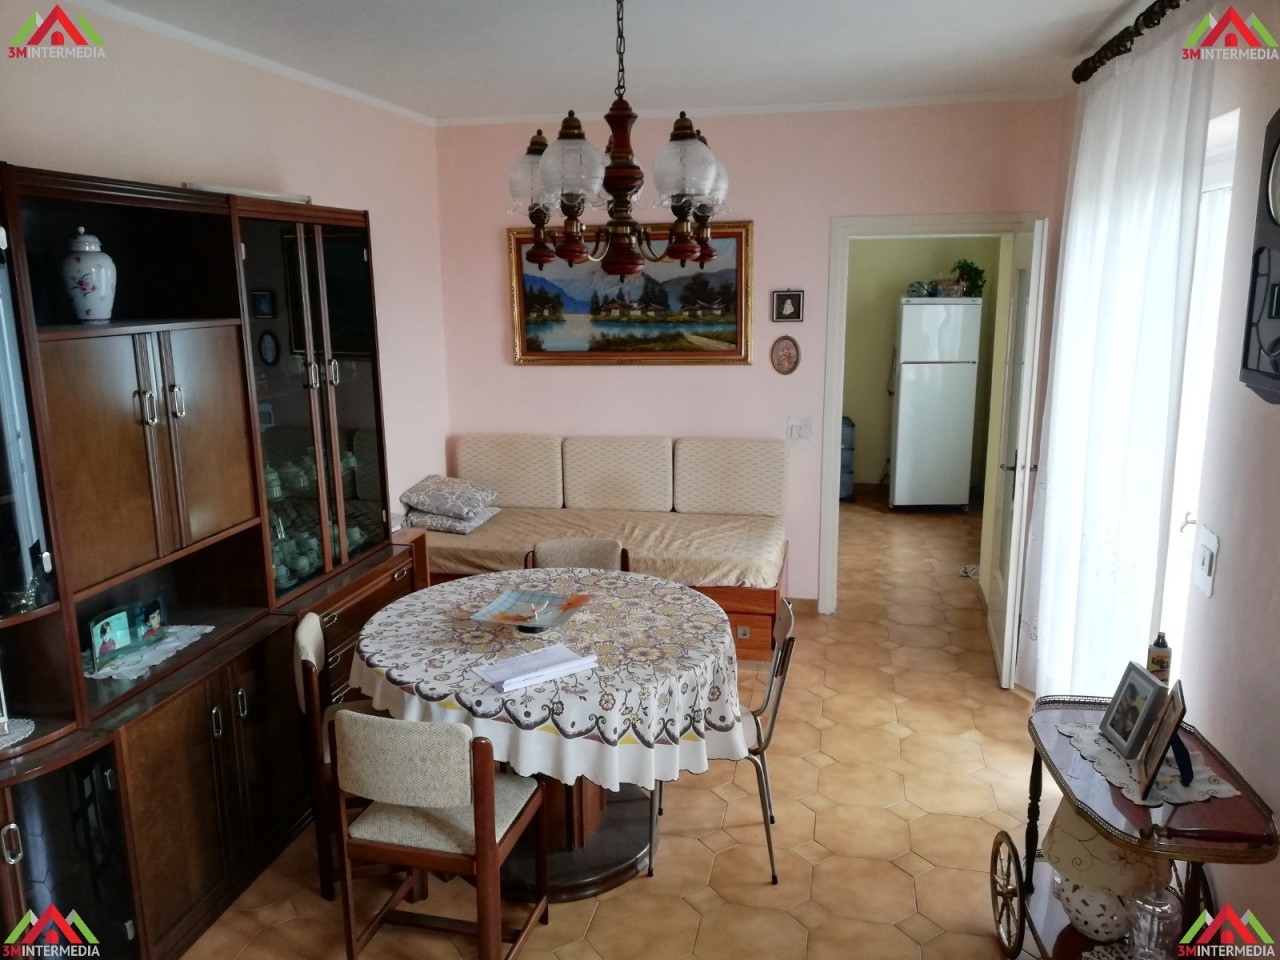 Appartamento in vendita a Lu, 5 locali, prezzo € 40.000 | CambioCasa.it